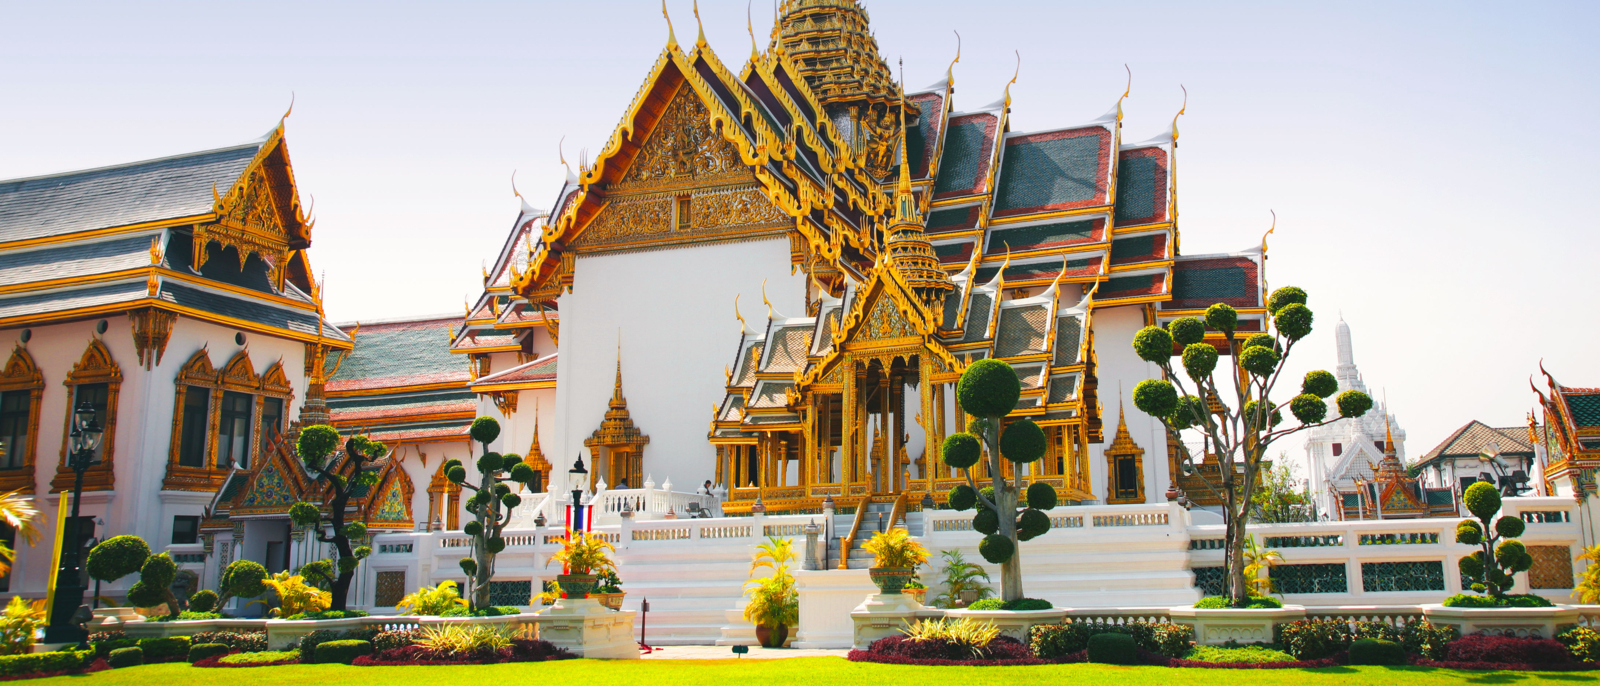 Royal Palace in Bangkok, Thailand.